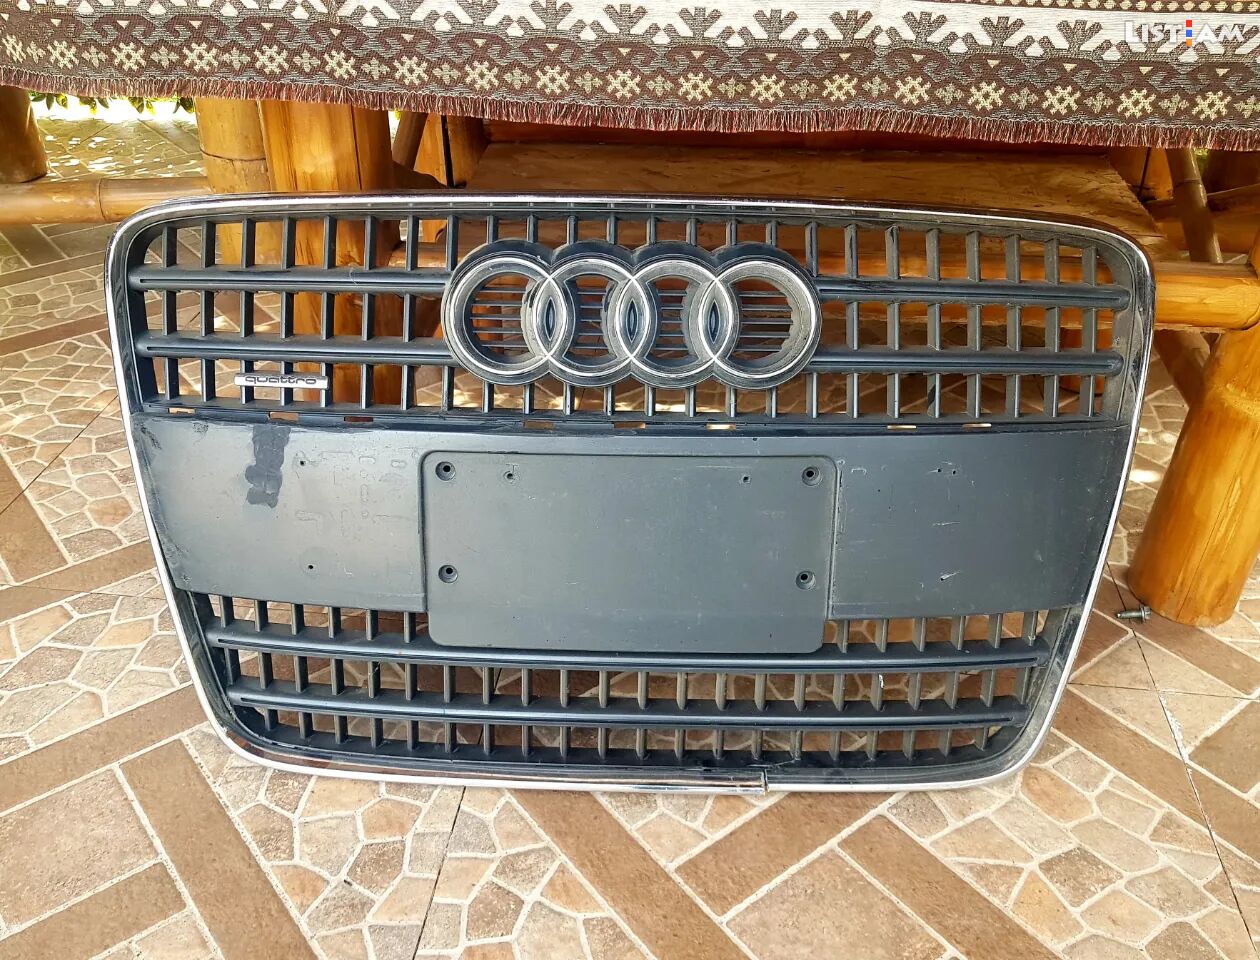 Audi q7